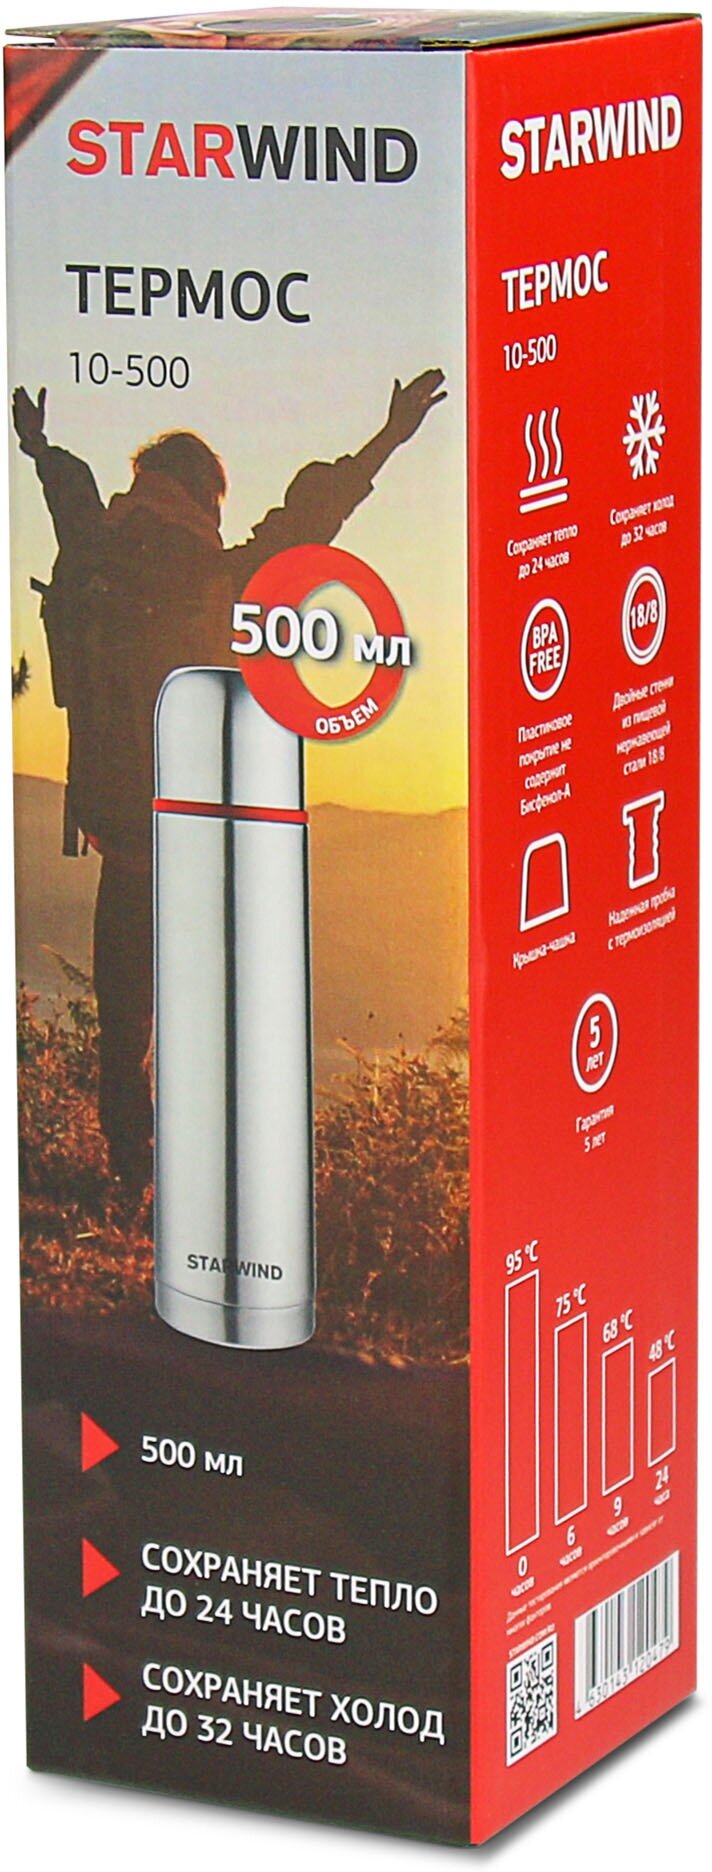 Термос для напитков Starwind 10-500 0.5л. серебристый/красный картонная коробка - фотография № 8